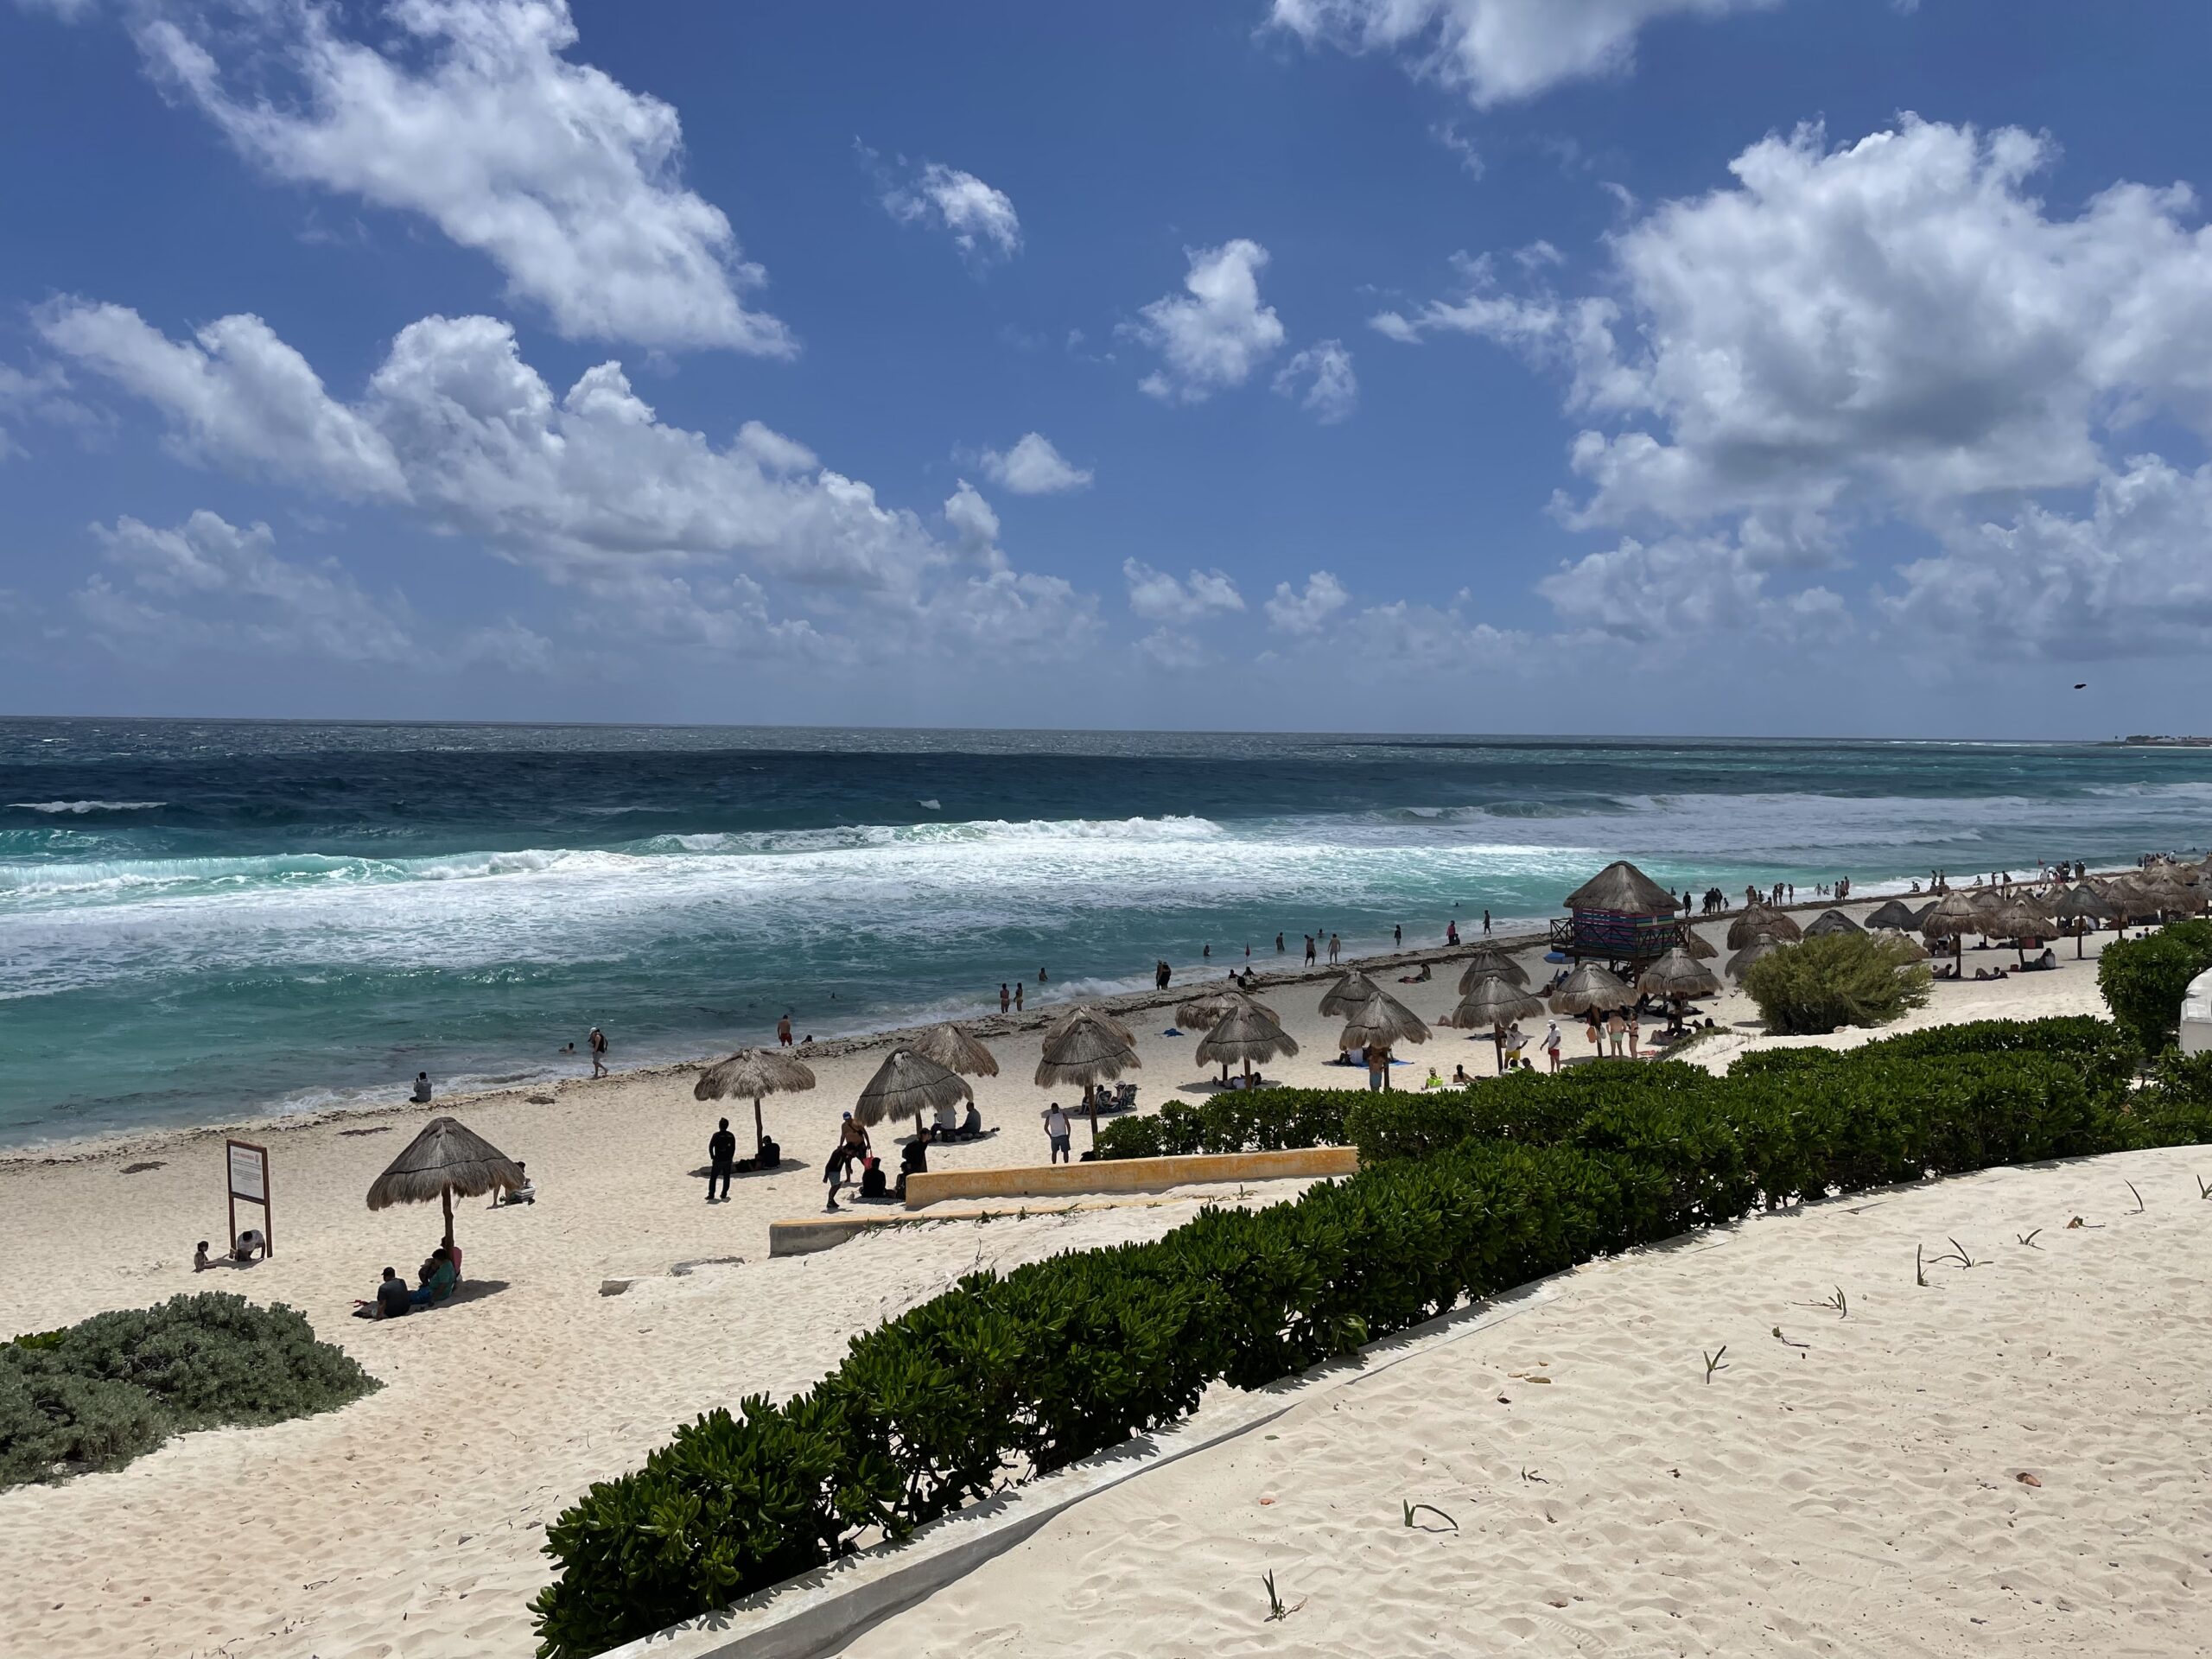 Desmienten ataque de tiburón a niño en playas de Cancún